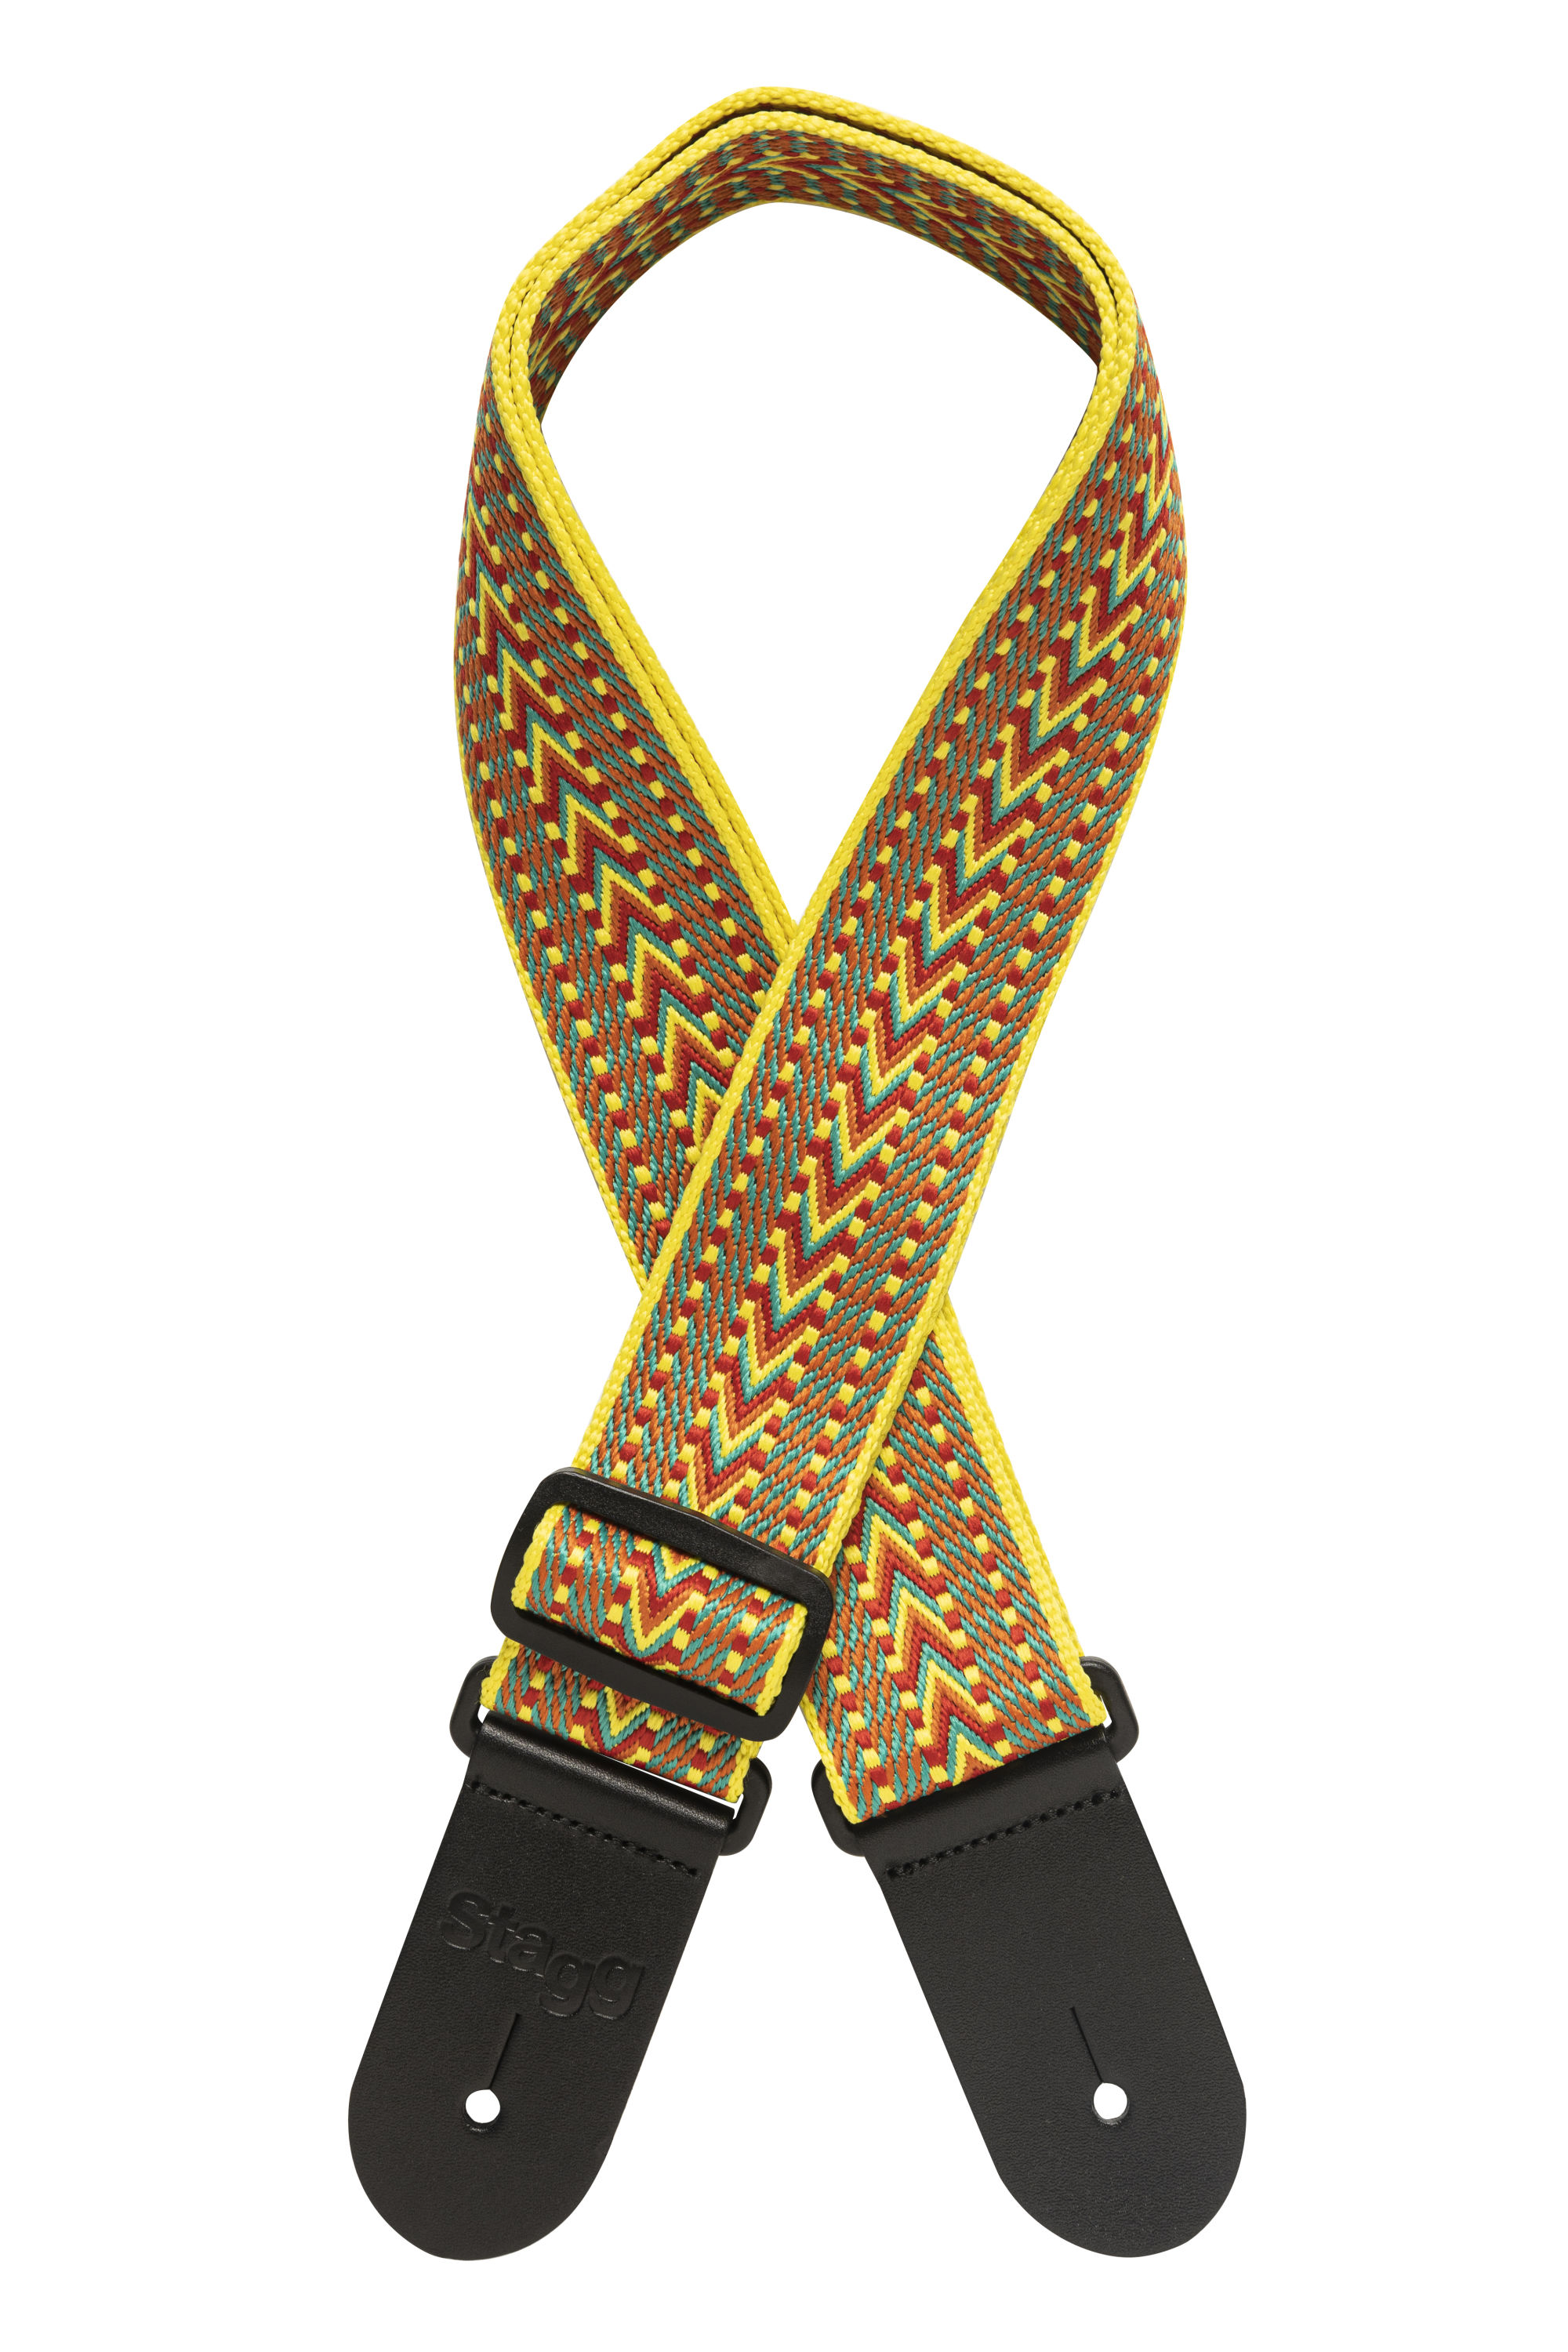 Stagg SWO COT RAF YEL, tkaný bavlněný kytarový popruh, vzor krokev, žlutý